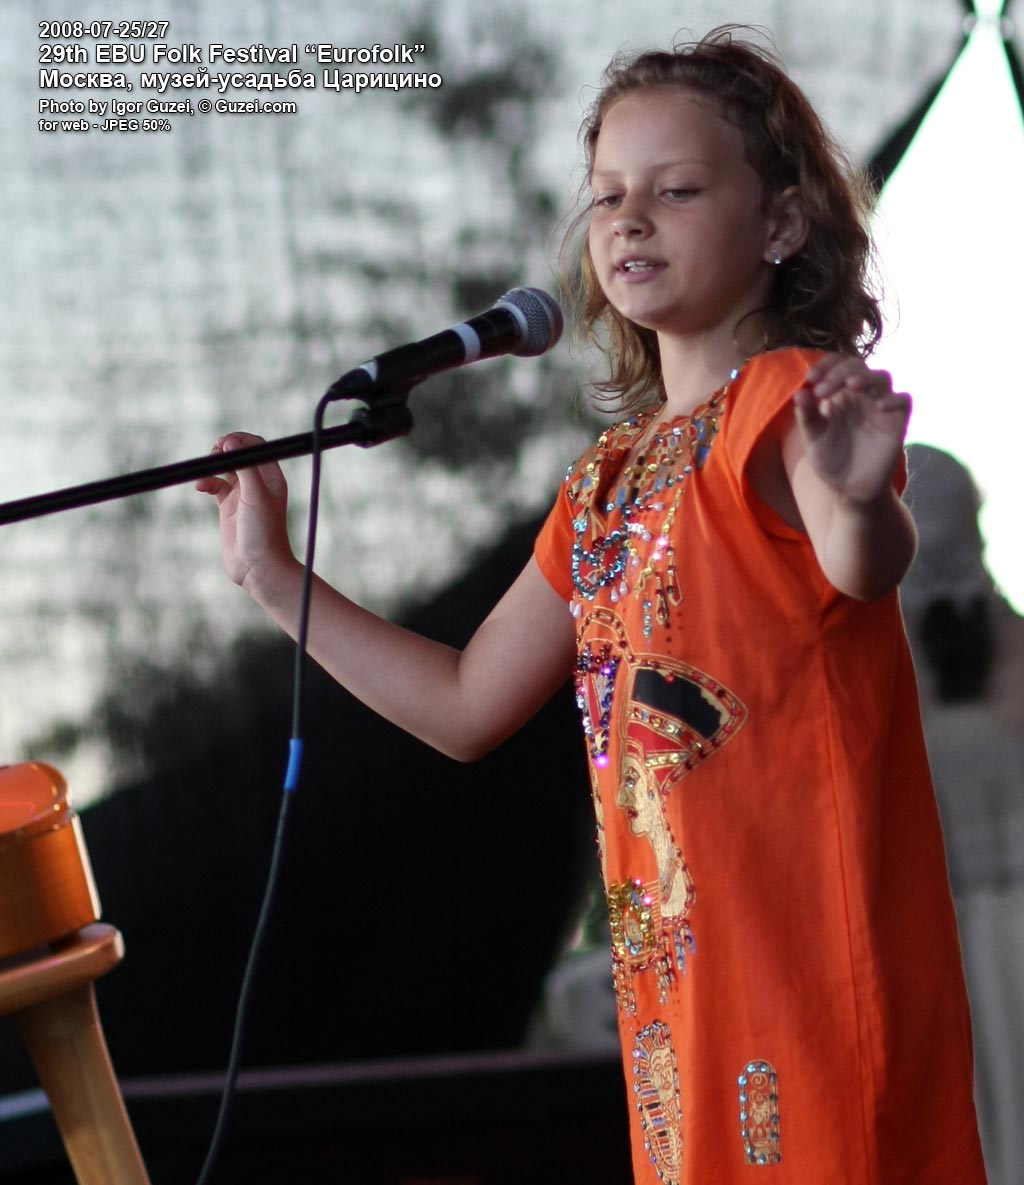 Катя Нефедова заняла 2 место в конкурсе народных исполнителей - Eurofolk 2008 (Музей-усадьба "Царицыно") 2008-07-26 19:41:58